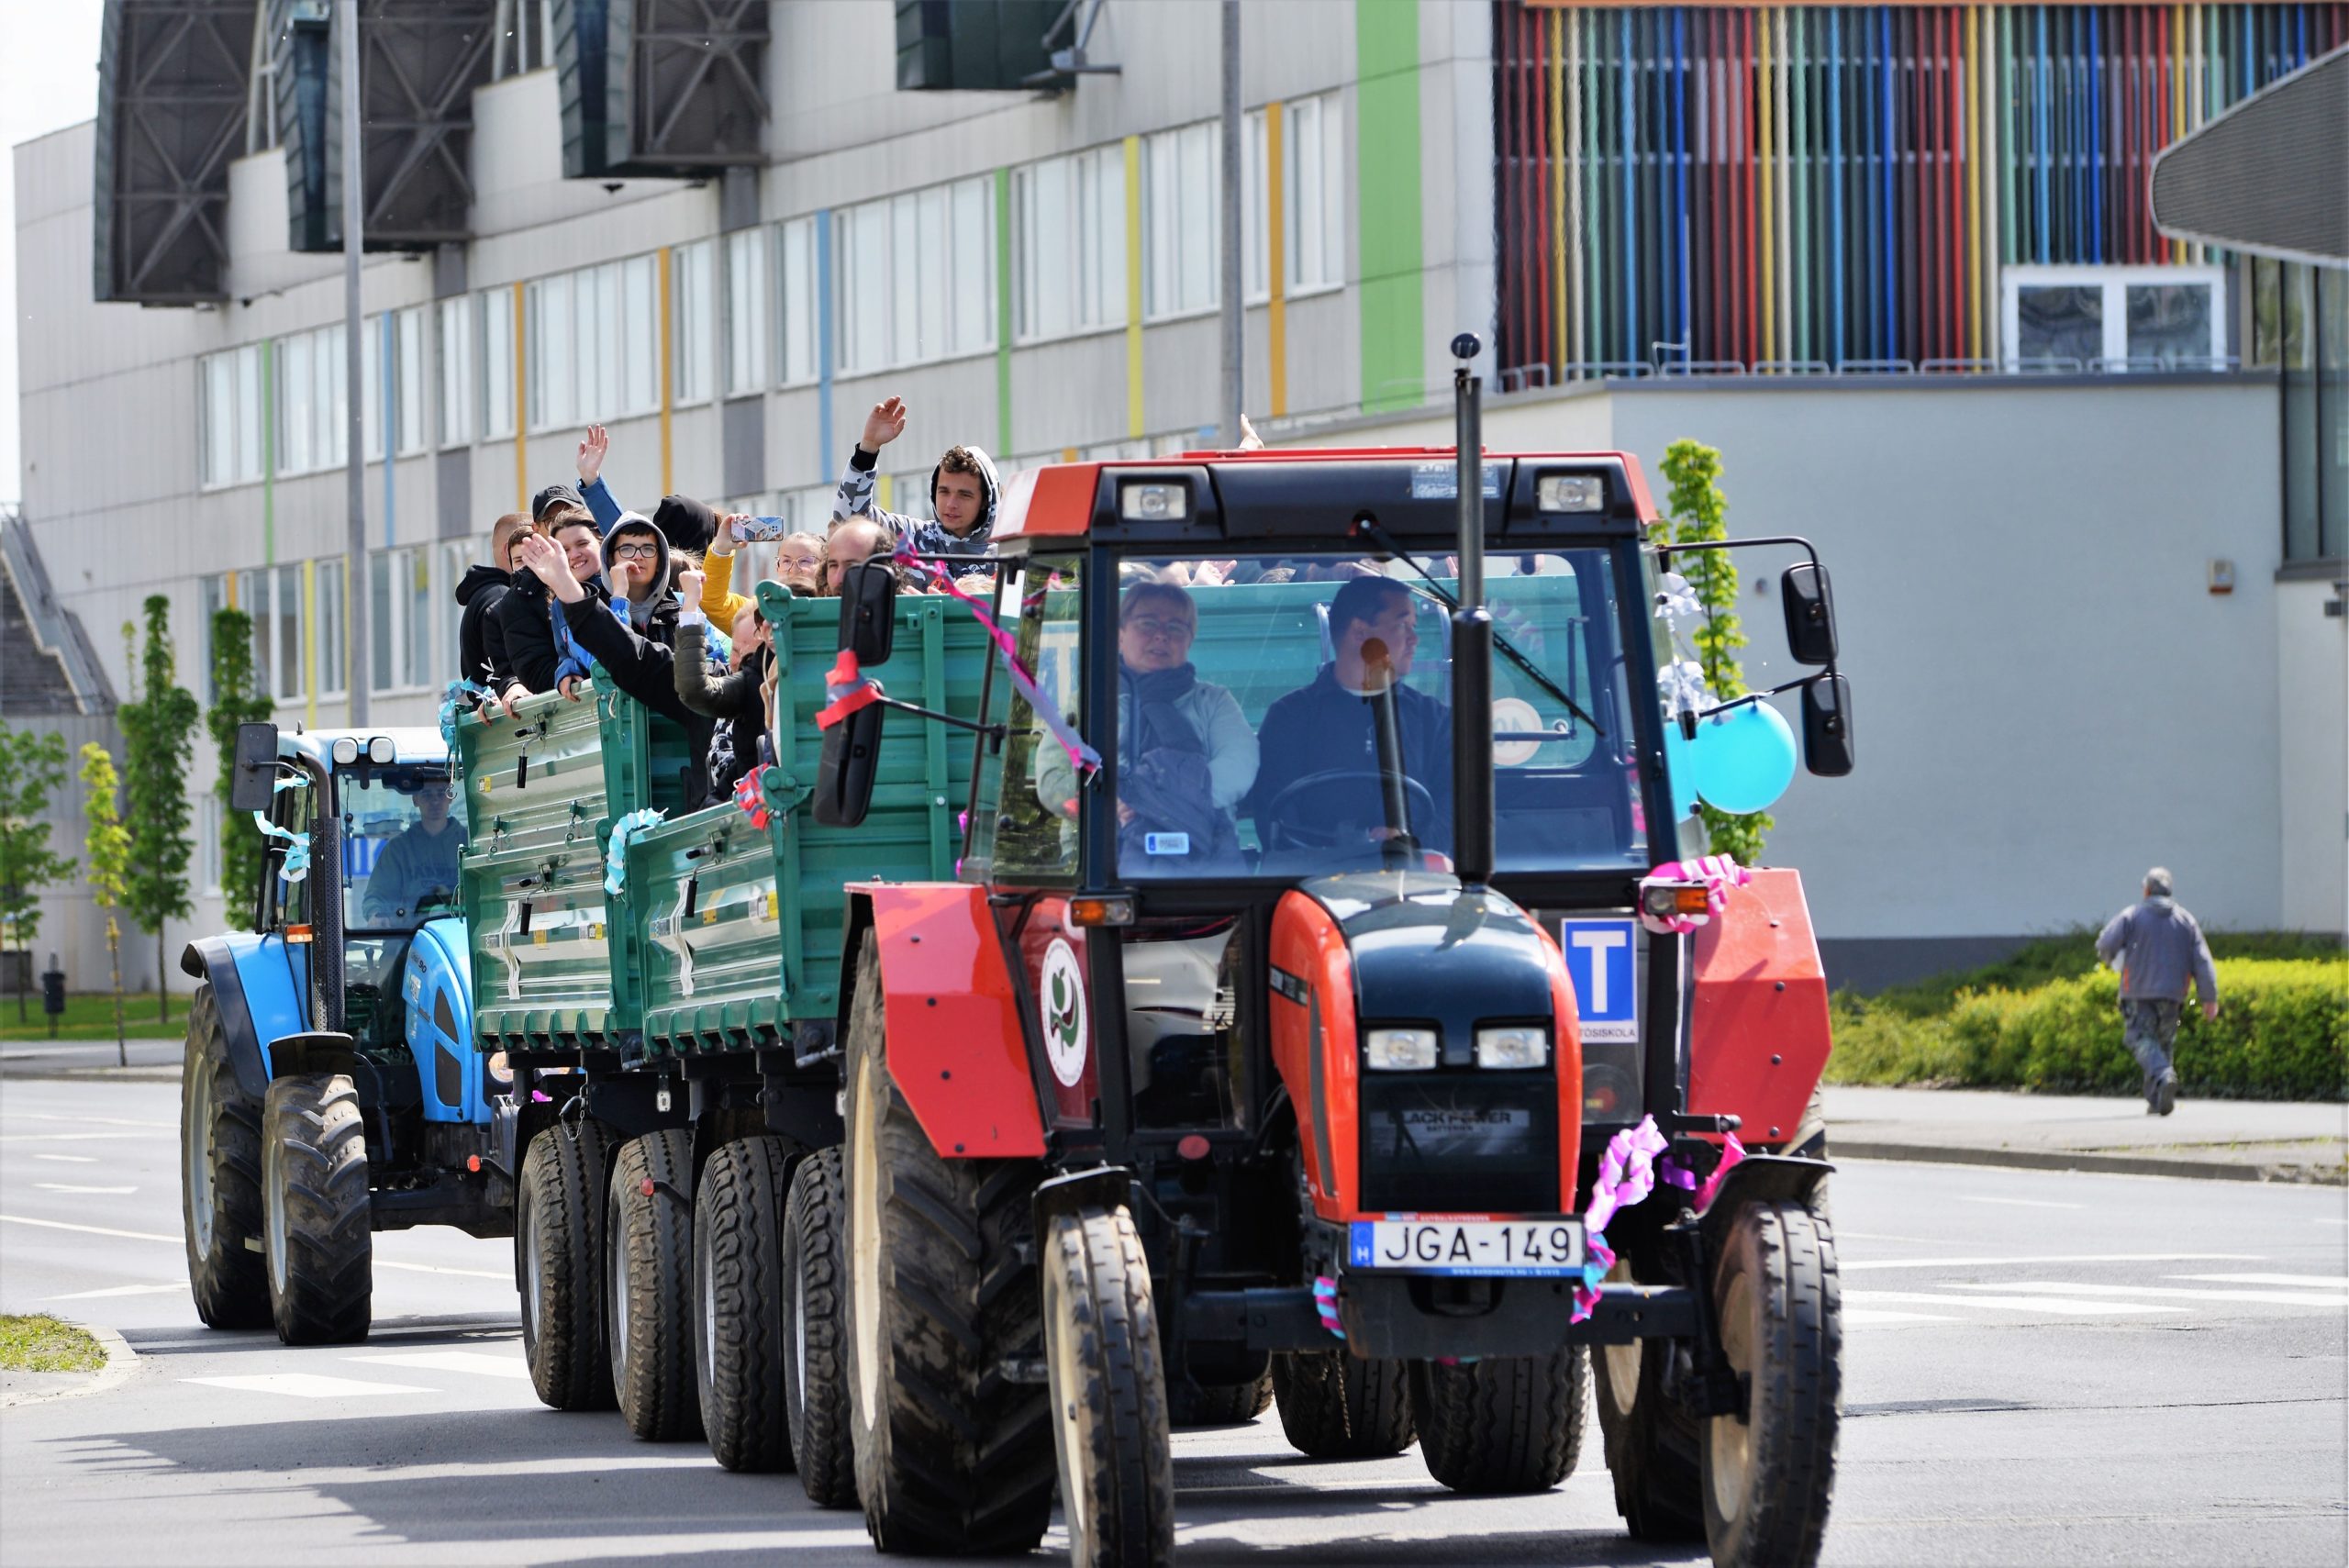 Emberek egy csoportja ujjong az ünnepi díszekkel díszített pótkocsi hátuljáról, amelyet egy piros traktor vontatott egy napsütötte utcán, valószínűleg felvonulás vagy ünneplés közben.